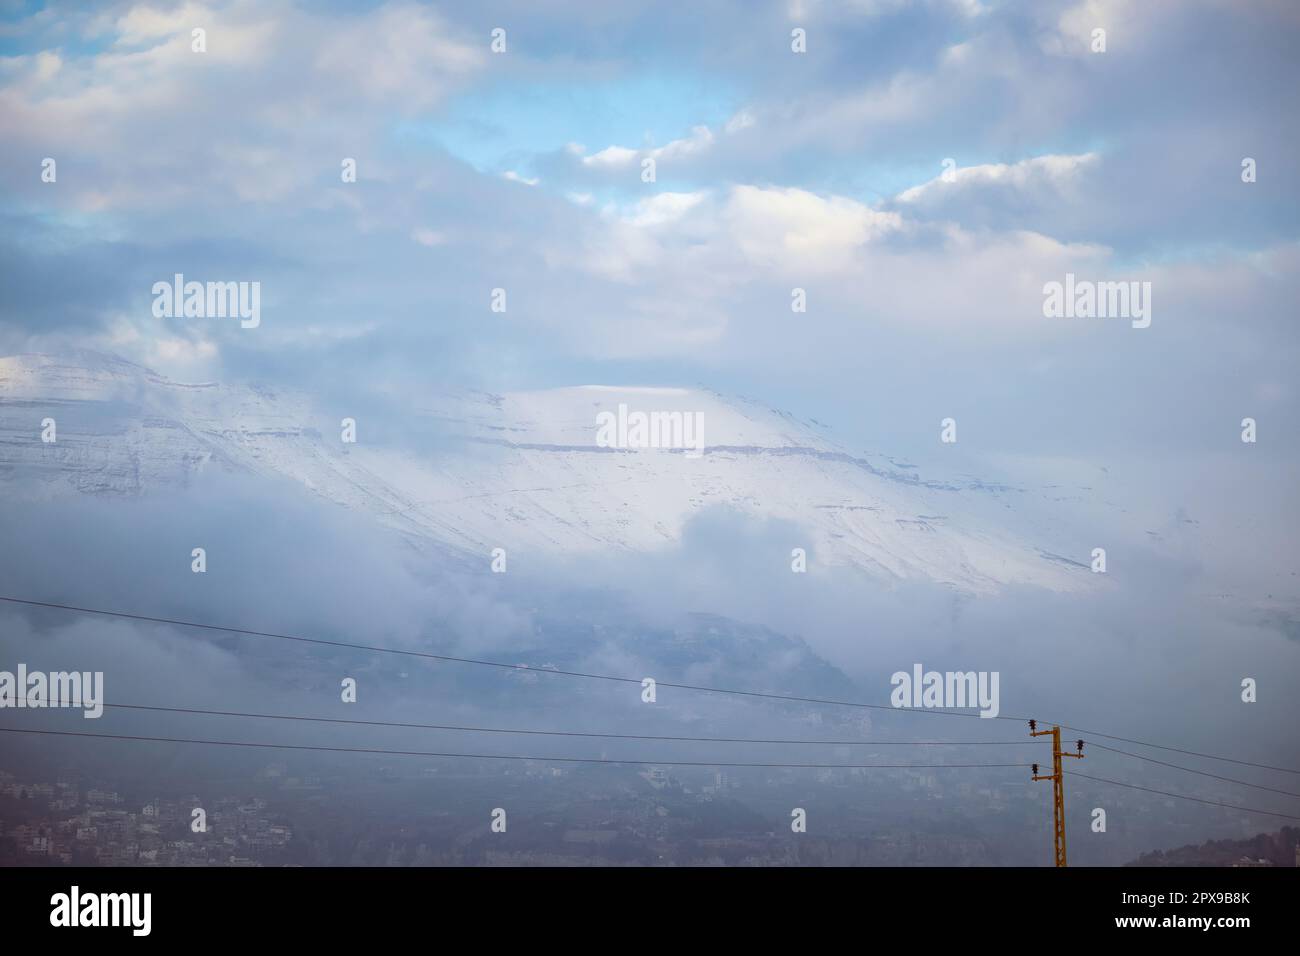 Splendido paesaggio di un'alta montagna coperta di neve in tempo Stormy. Villaggio montagnoso. Stazione sciistica. Libano Foto Stock